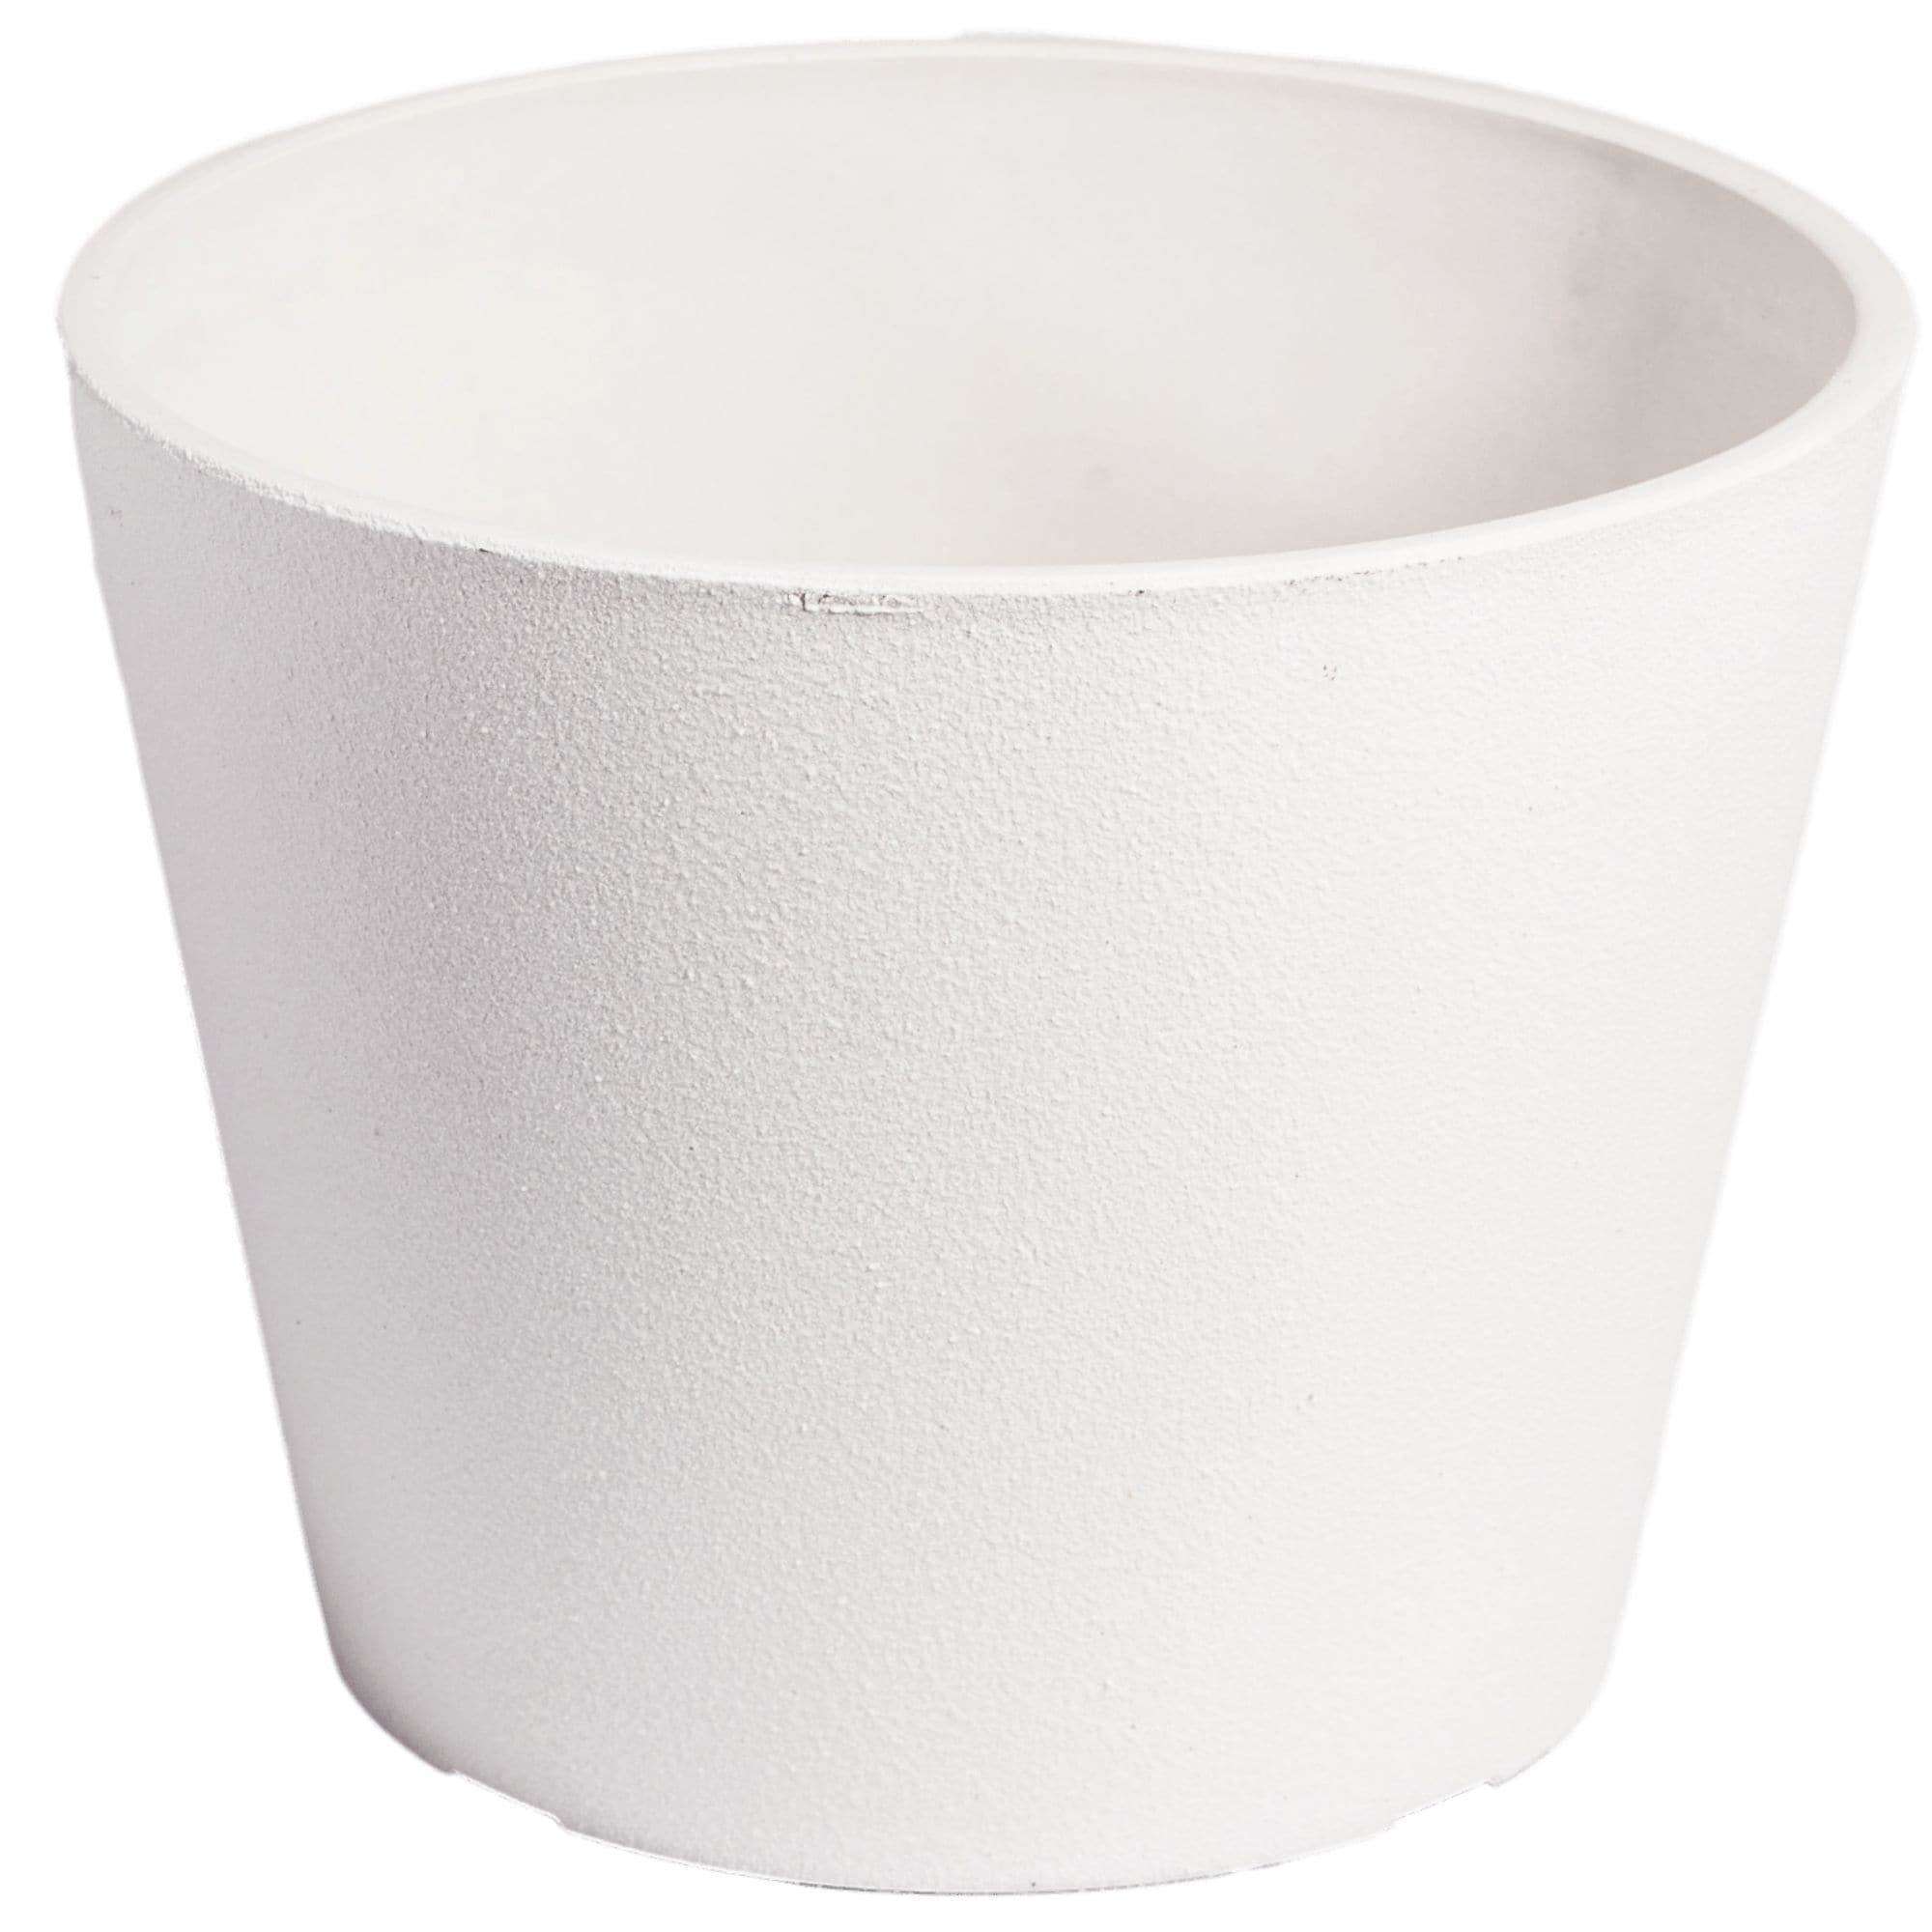 rendered-white-planter-pot-25cm-377979.jpg